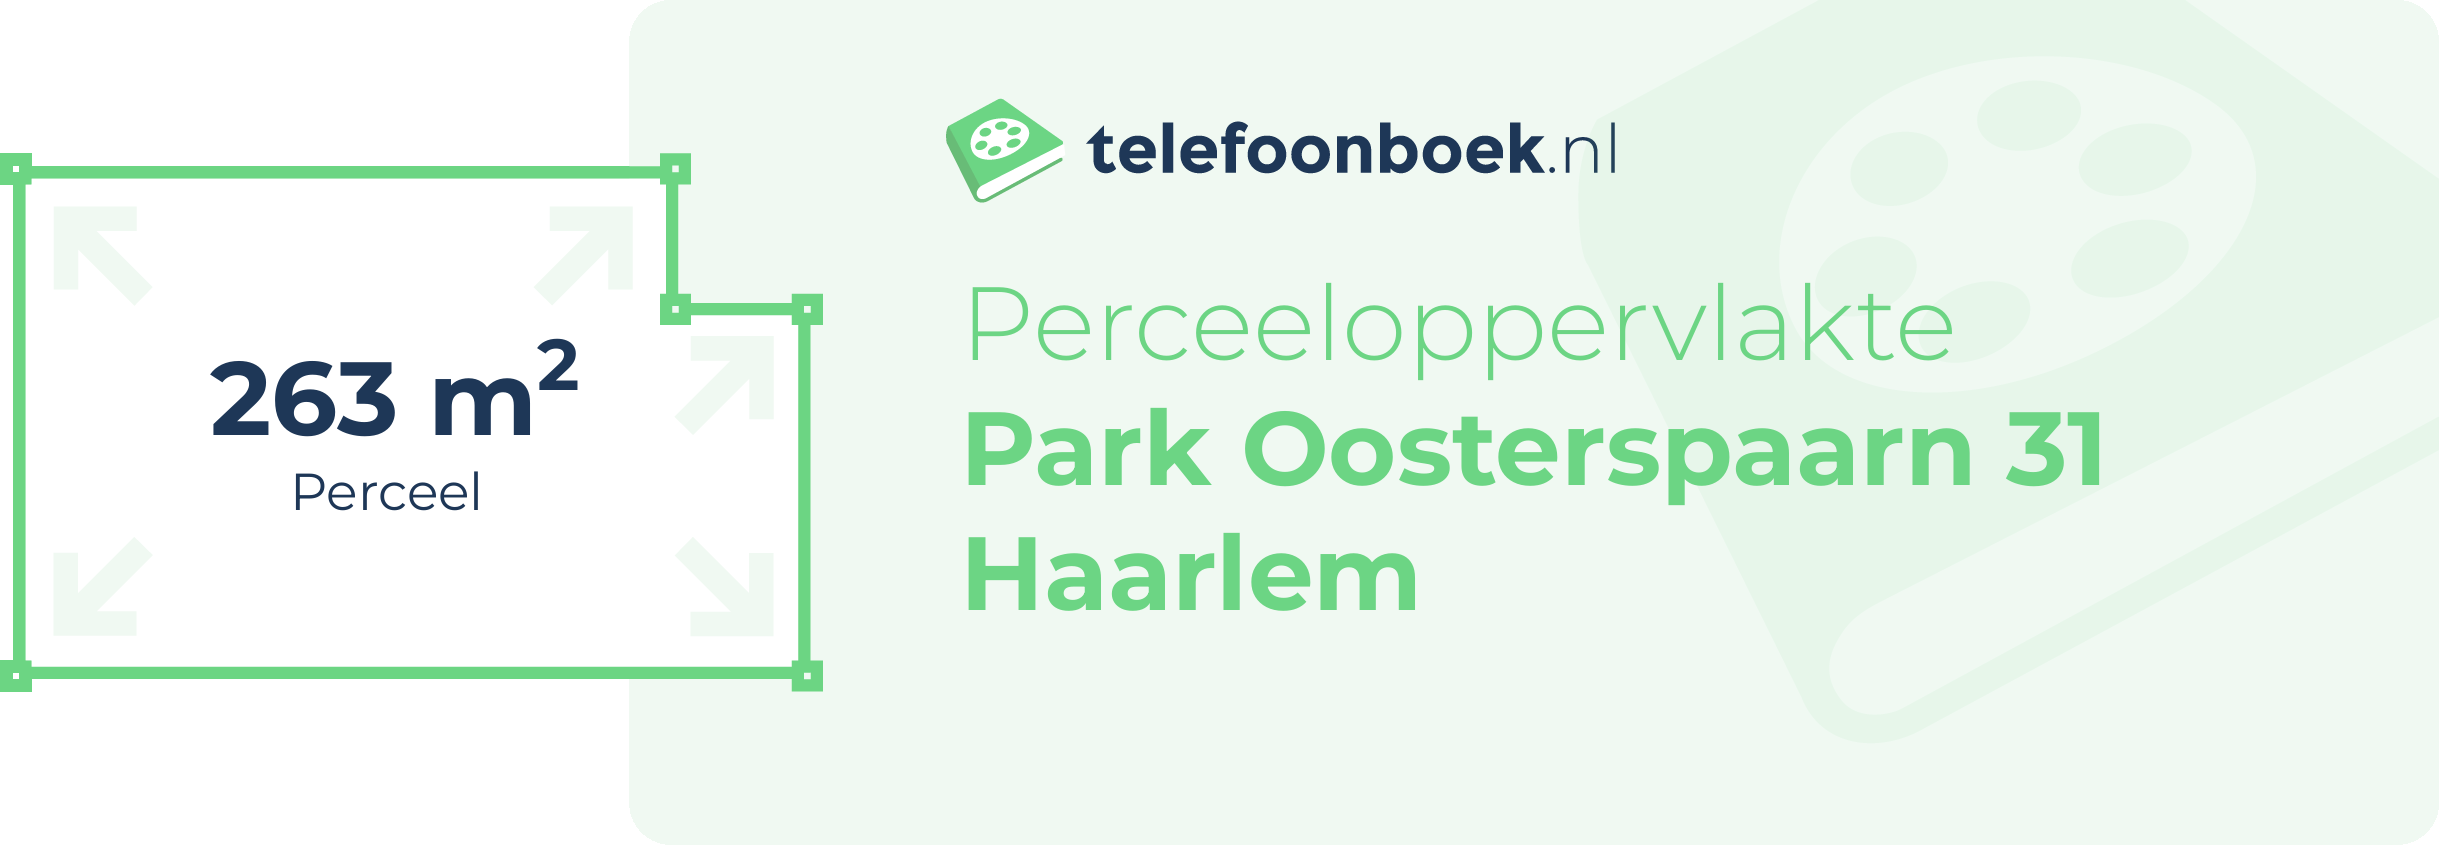 Perceeloppervlakte Park Oosterspaarn 31 Haarlem